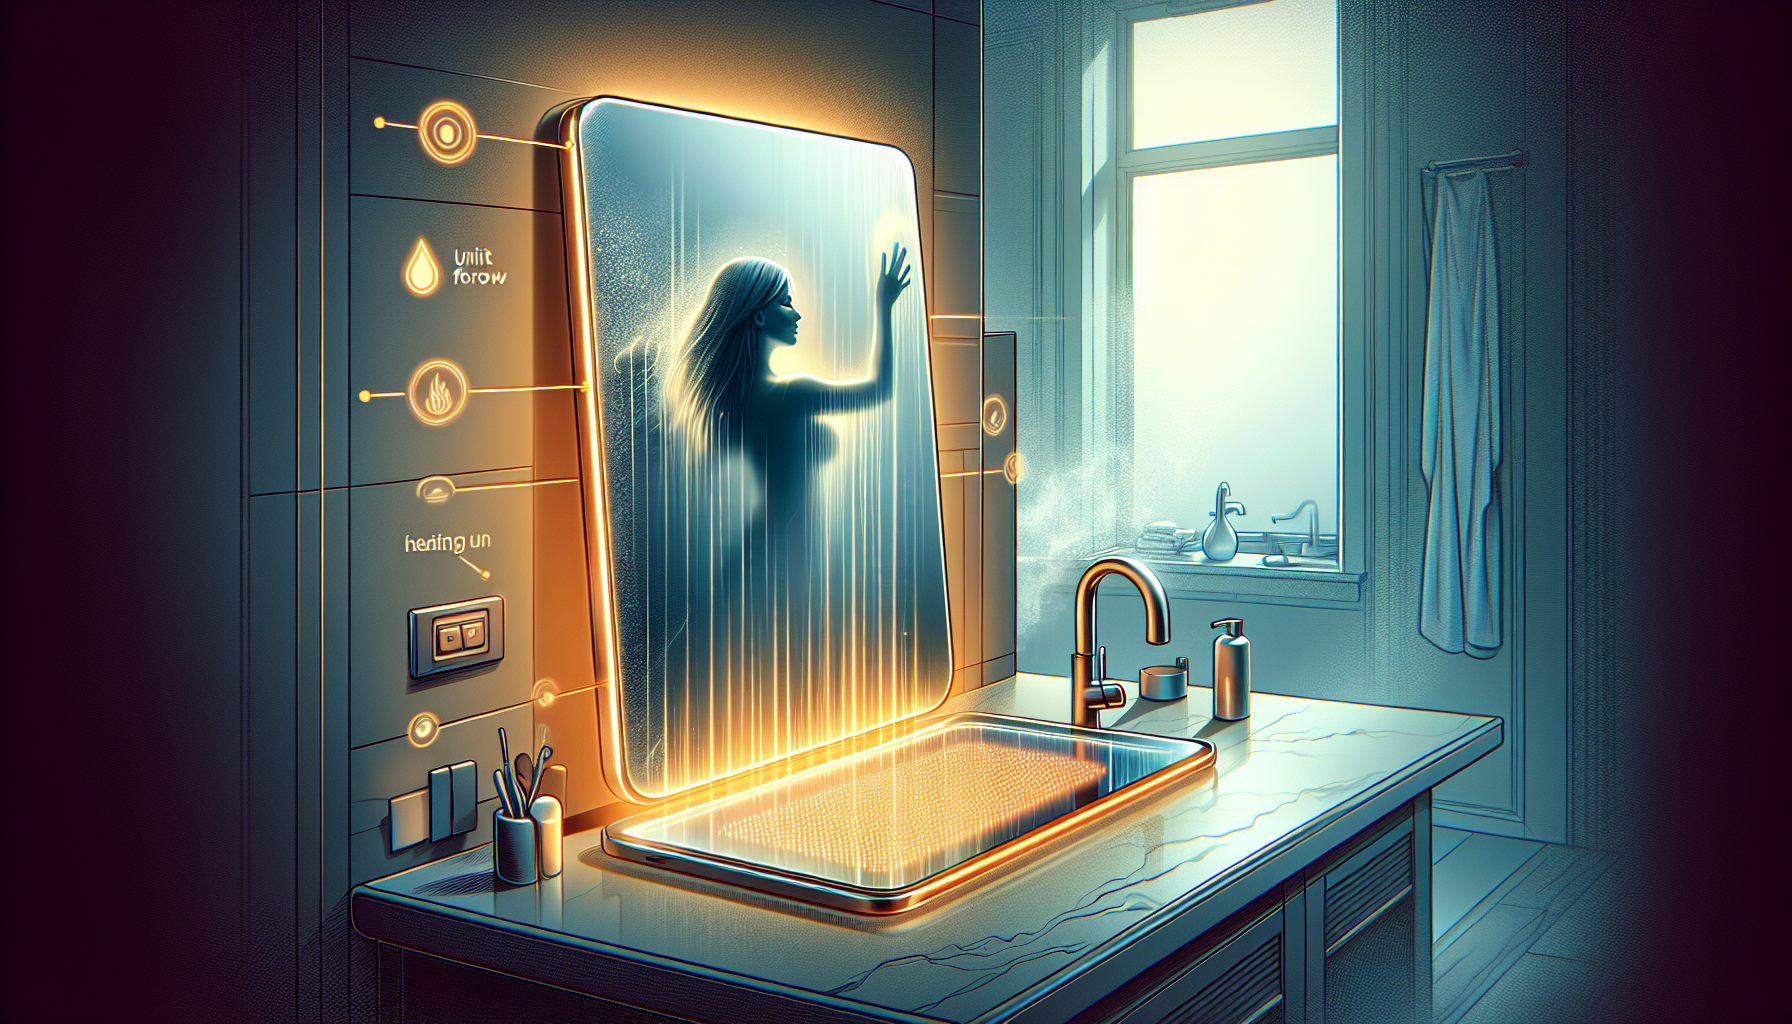 Spiegelheizung für beschlagfreie Sicht im Badezimmer